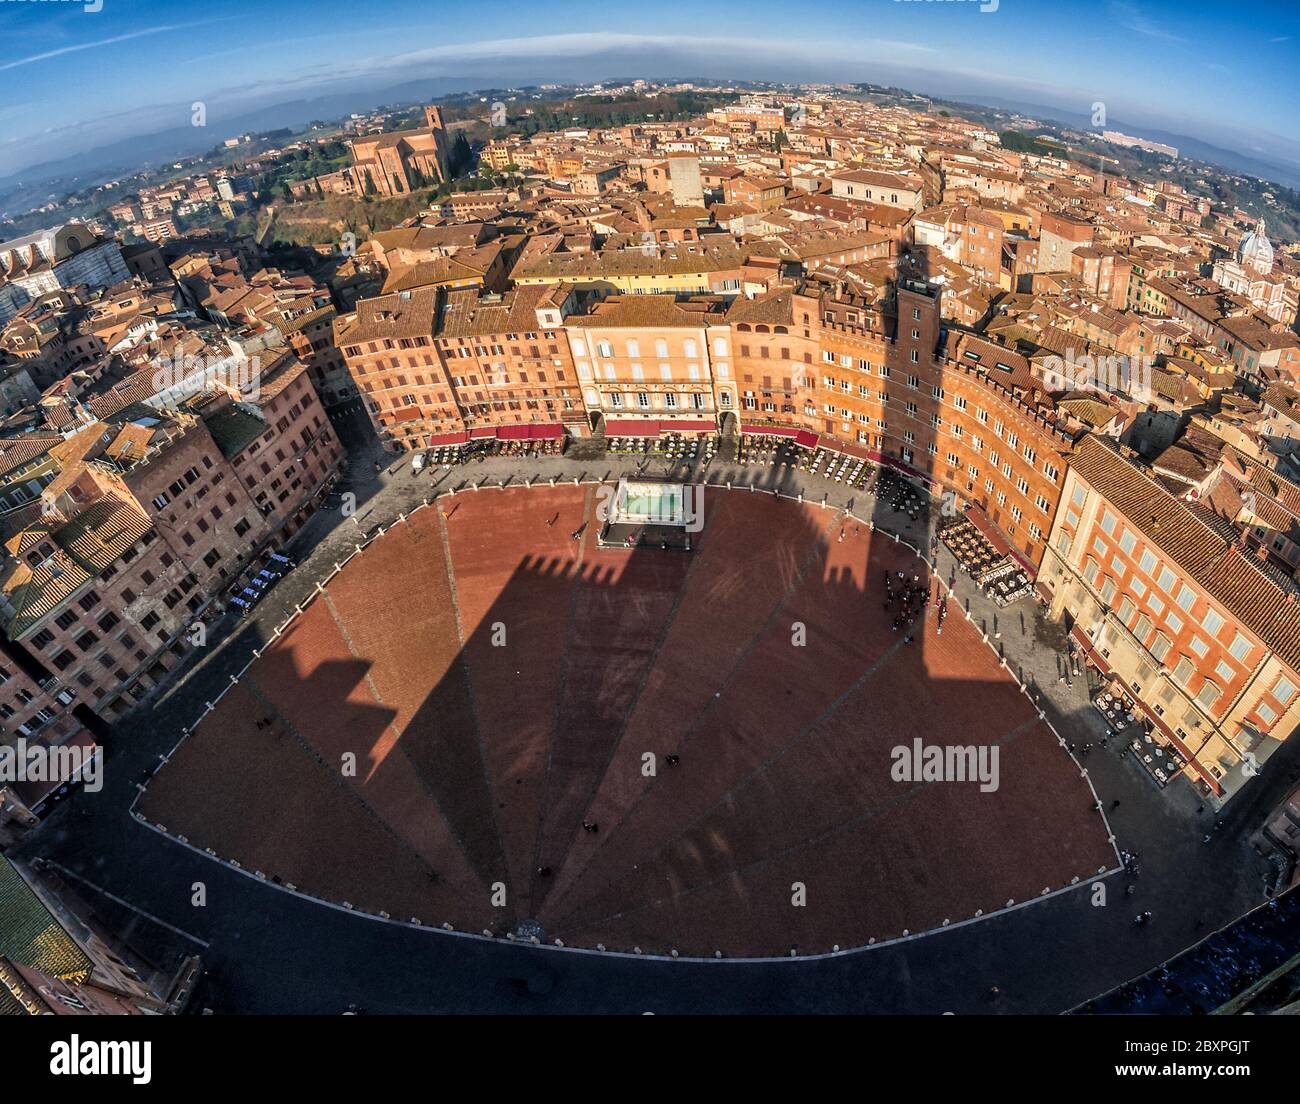 Die berühmte Piazza del Campo von Siena Blick von der Spitze des Turms mit einem Fischaugenaufnahme Stockfoto